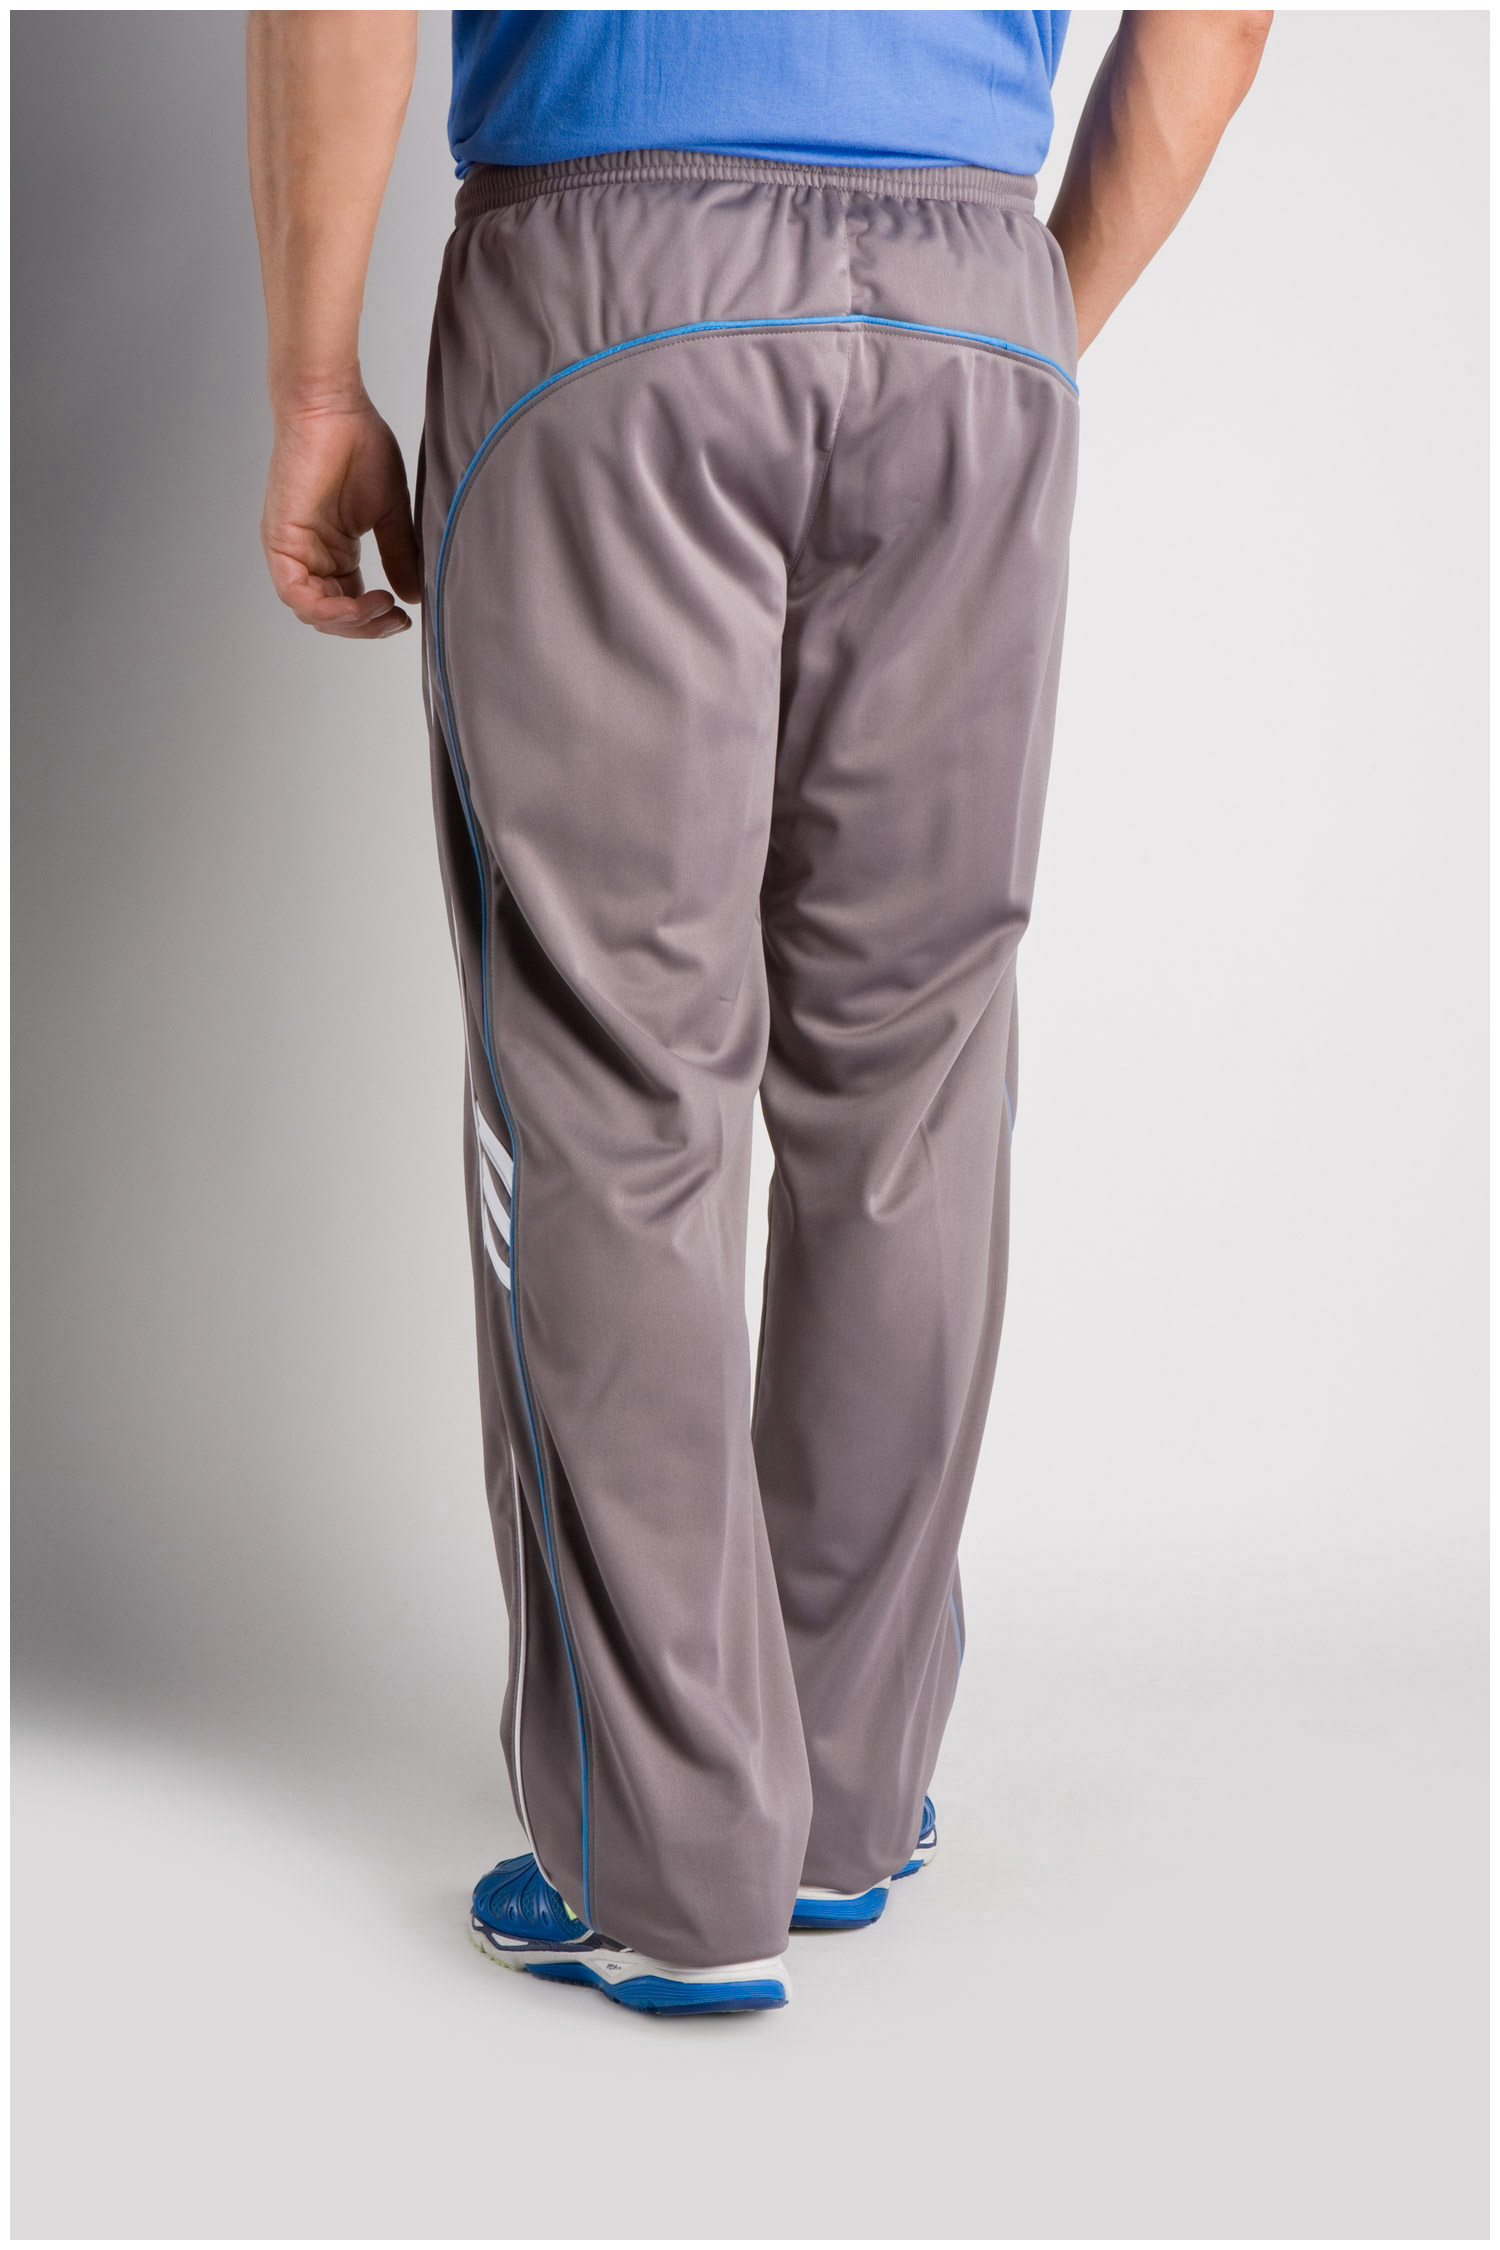 Pantalones de Chandal Tallas Grandes Hombre - Ref. 104779